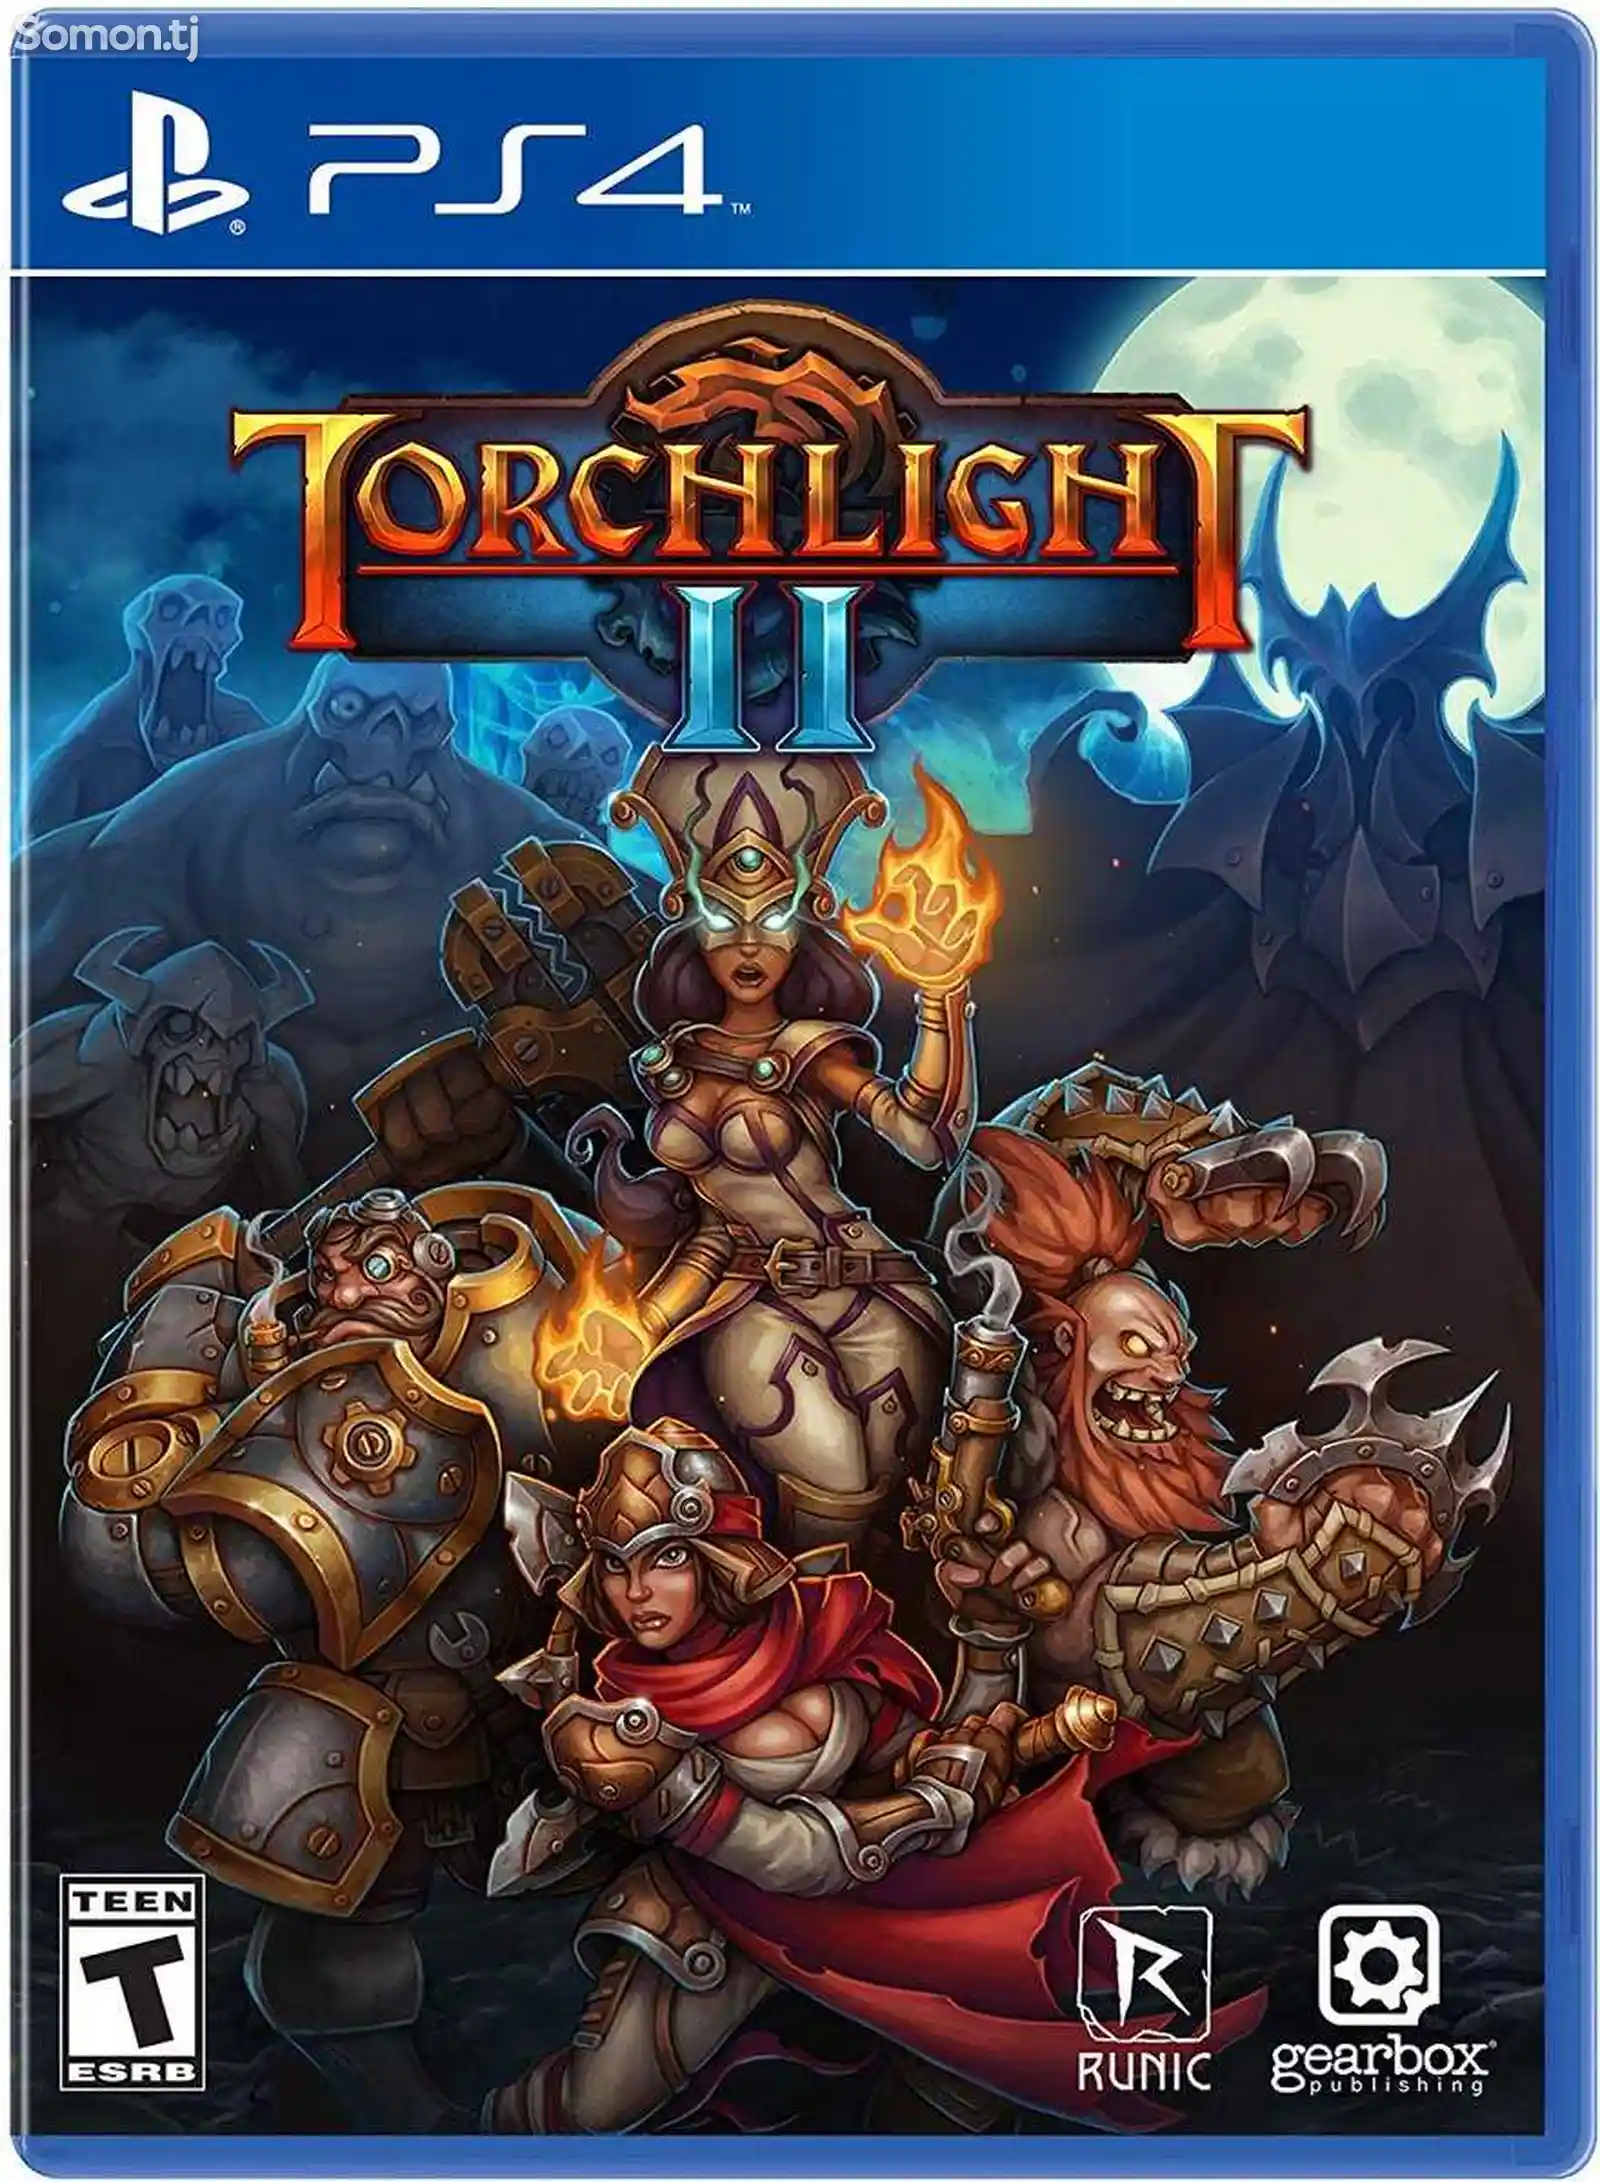 Игра Torchlight 3 для PS-4 / 5.05 / 6.72 / 7.02 / 7.55 / 9.00 /-1